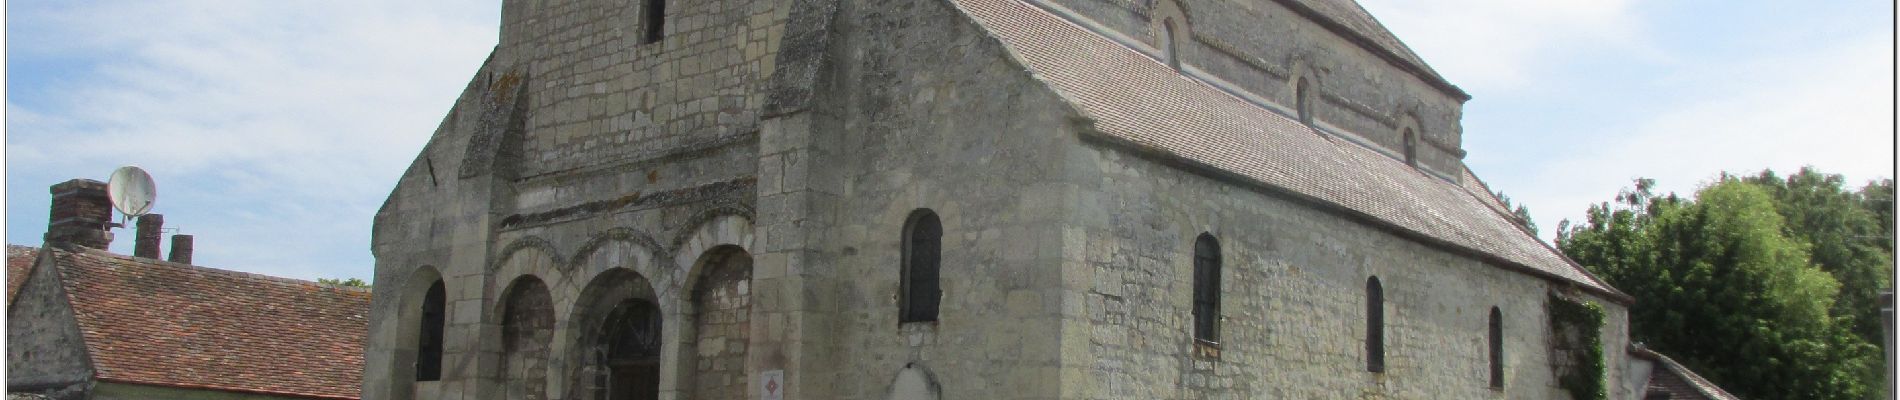 Point d'intérêt Pont-Sainte-Maxence - église St Lucien de Sarron - Photo